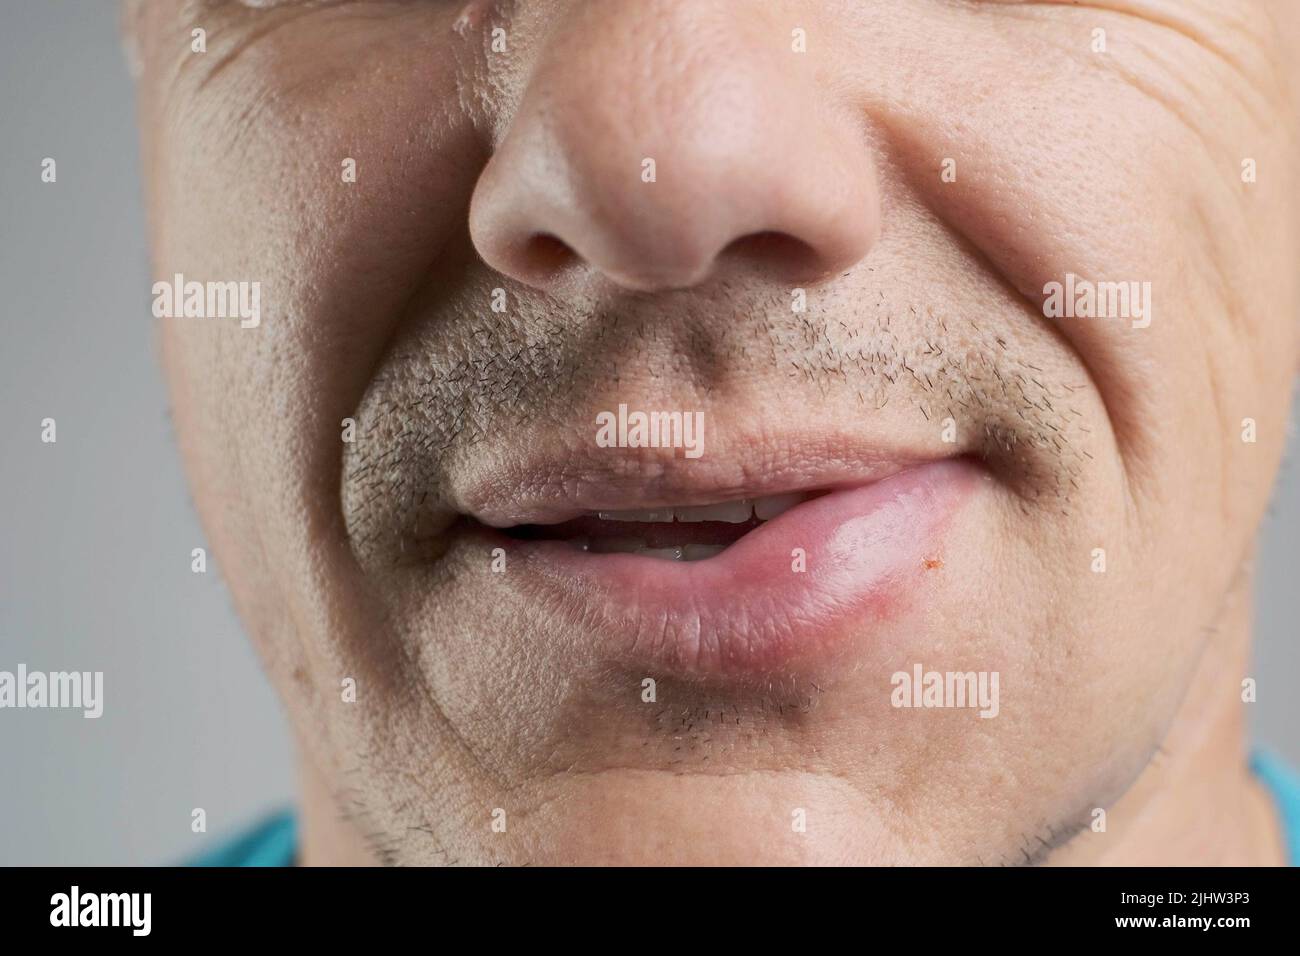 Réaction allergique sur la lèvre d'un homme après une piqûre d'abeille Banque D'Images